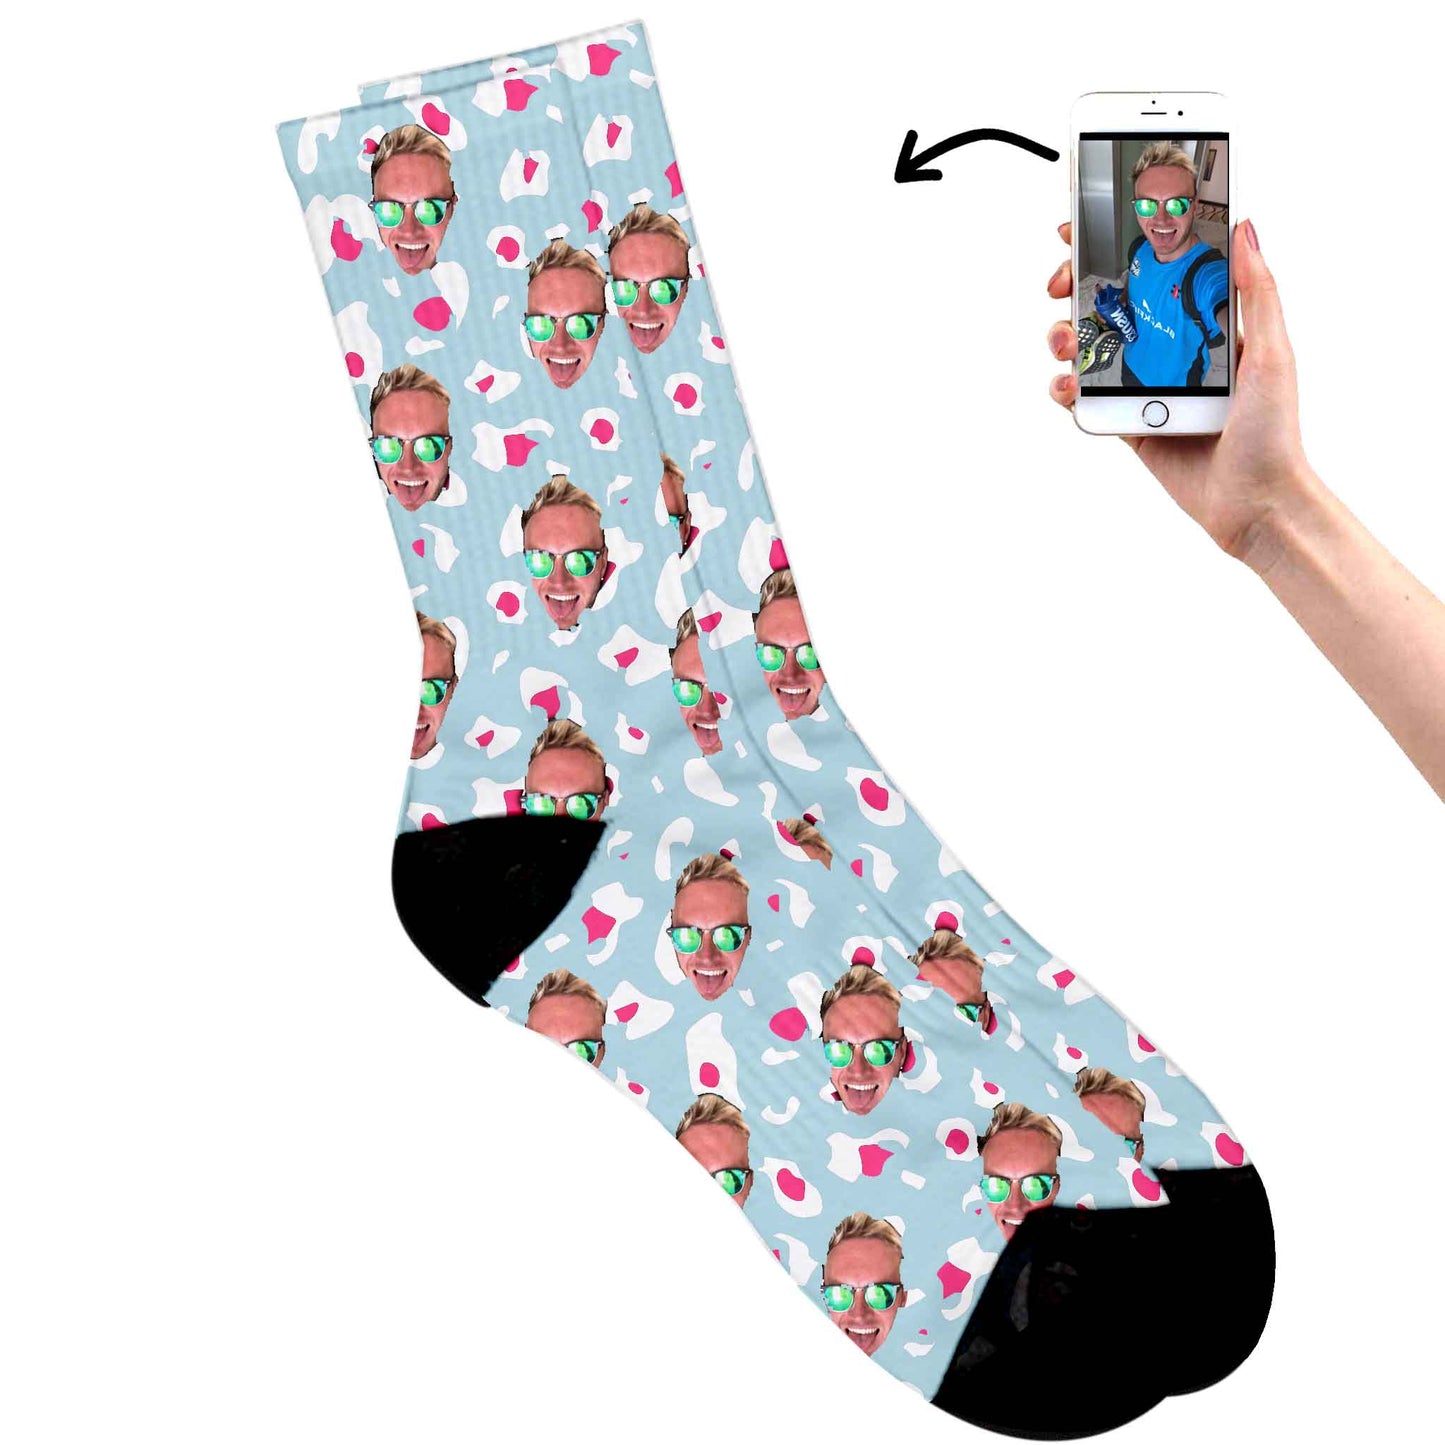 
                  
                    Fun Socks For Men
                  
                